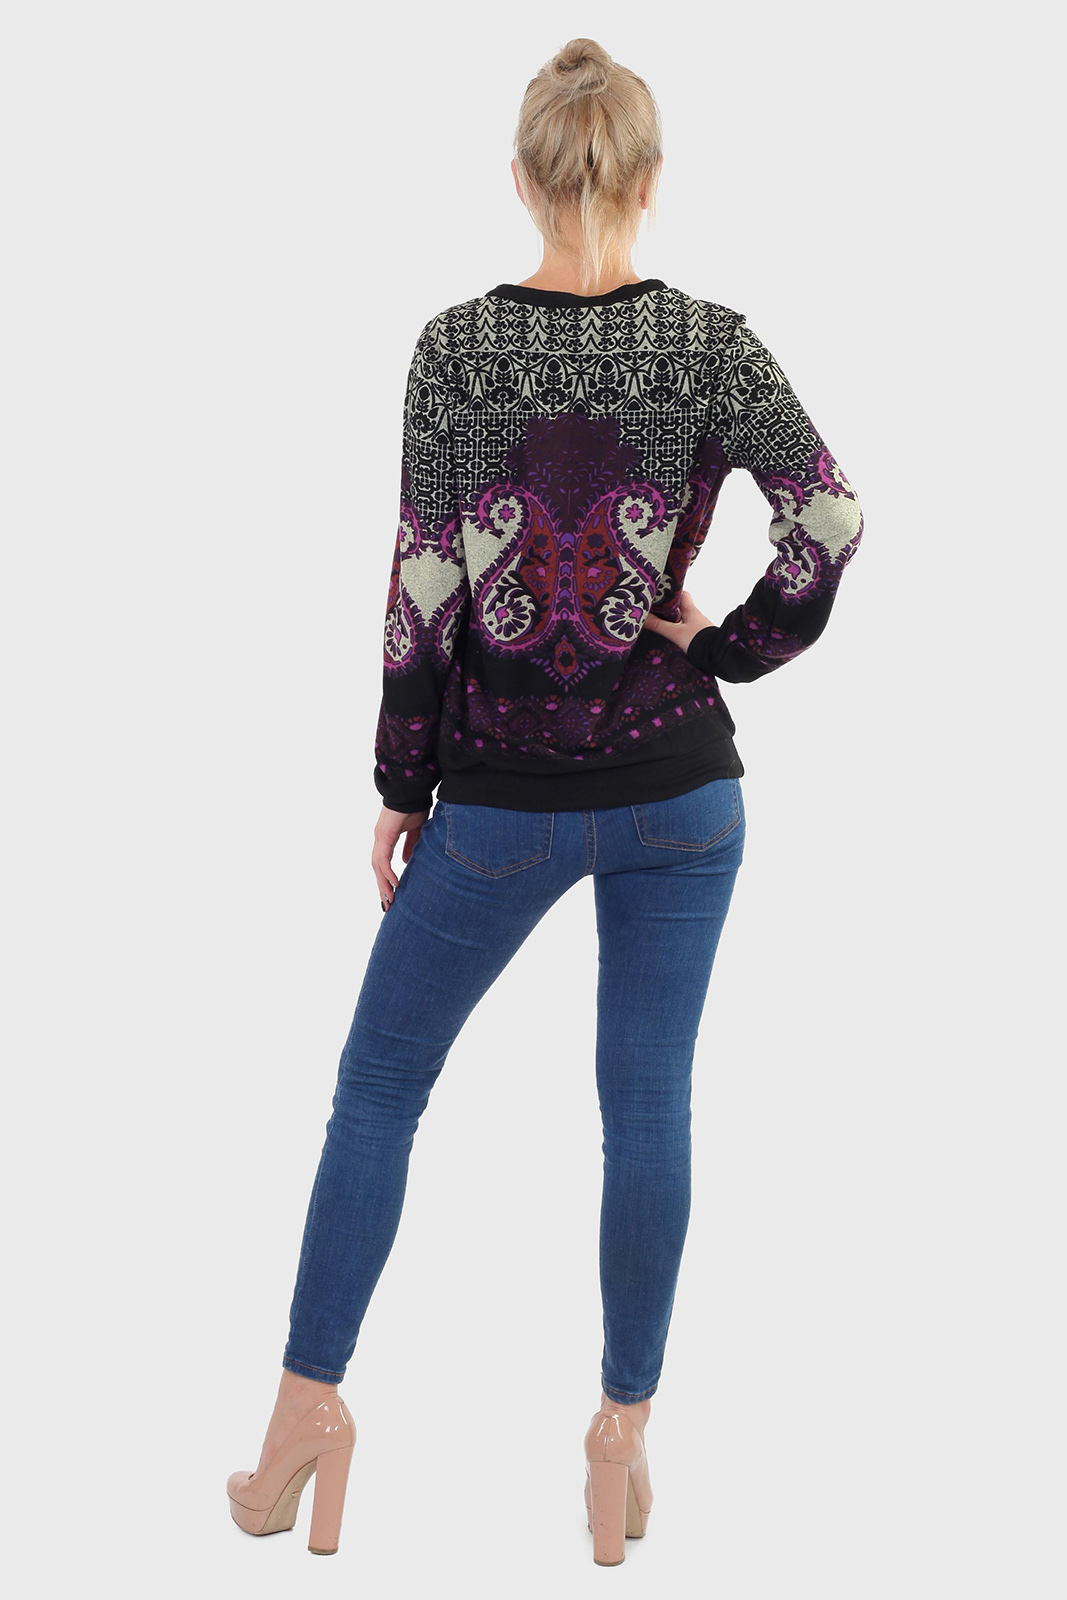 Молодежный свитер для девушек – модная расцветка